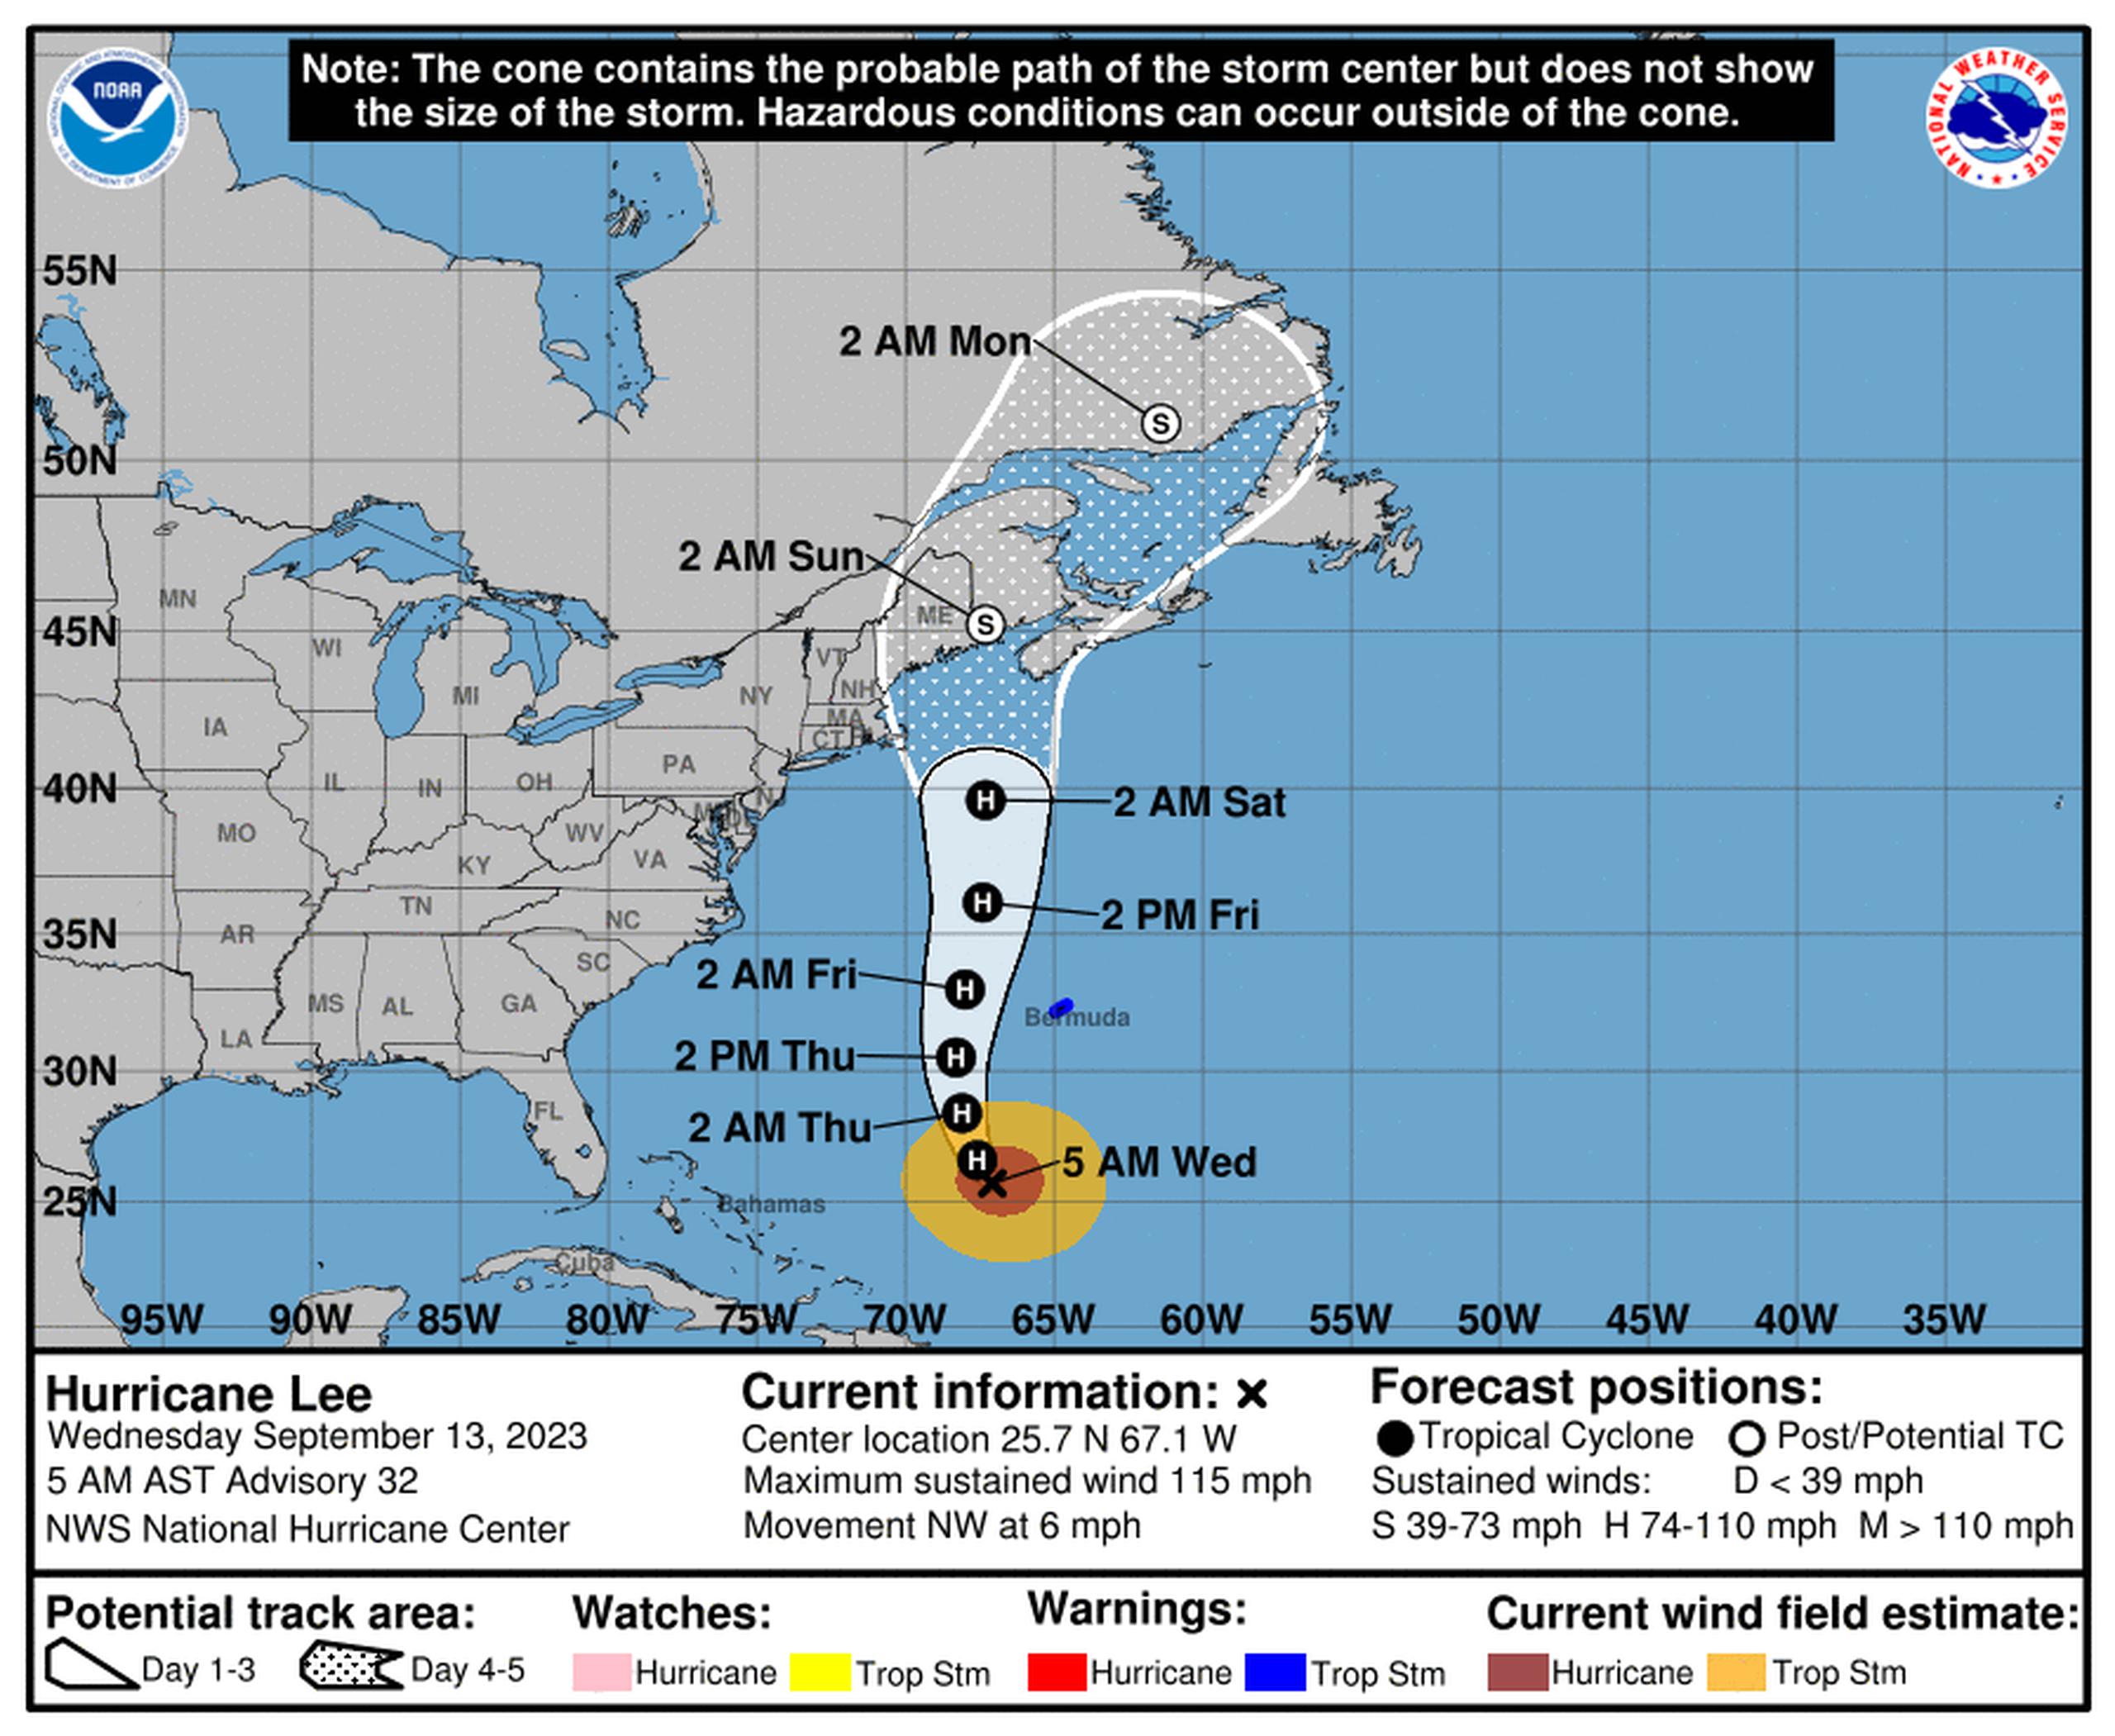 Pronóstico del huracán Lee emitido a las 5:00 de la mañana del 13 de septiembre de 2023.